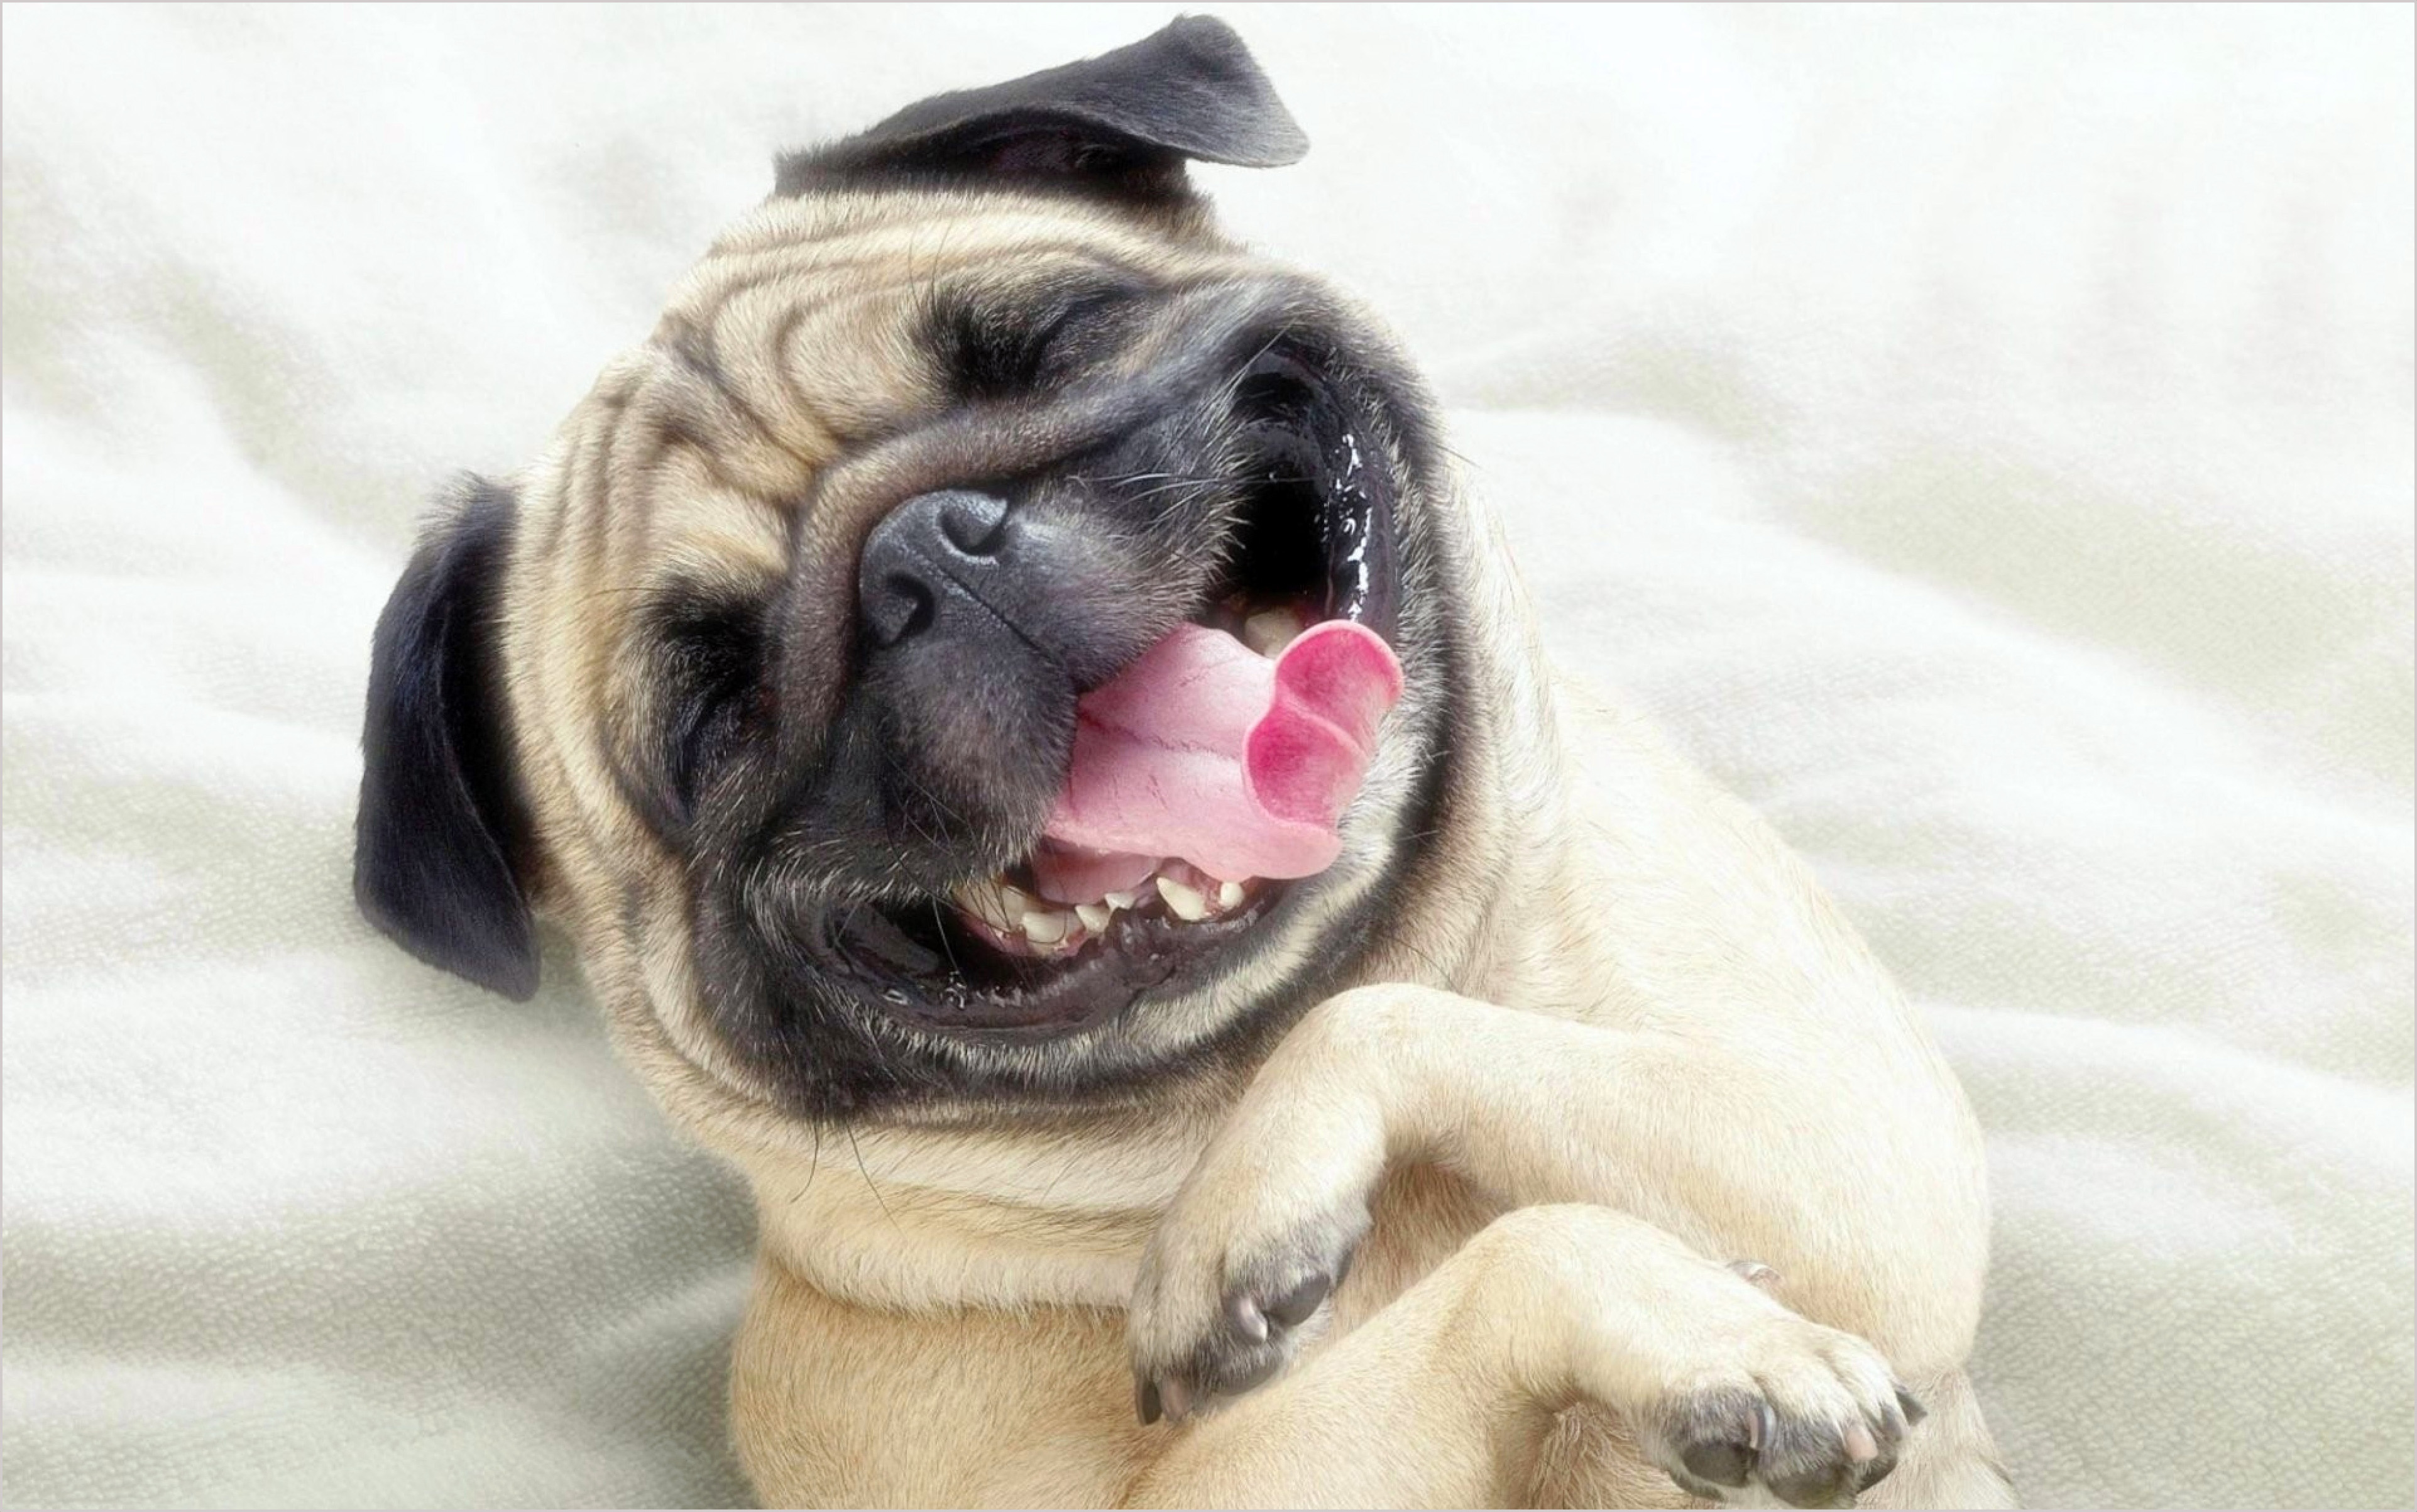 Hình ảnh chó mặt xệ: Hình ảnh chó mặt xệ sẽ khiến bạn không khỏi bất ngờ và ngạc nhiên trước vẻ độc đáo của chúng. Dù nhìn từ nhiều góc độ khác nhau, chó mặt xệ vẫn luôn mang đến sự đáng yêu và tuyệt vời. Cùng xem thôi và tận hưởng niềm vui nhé!